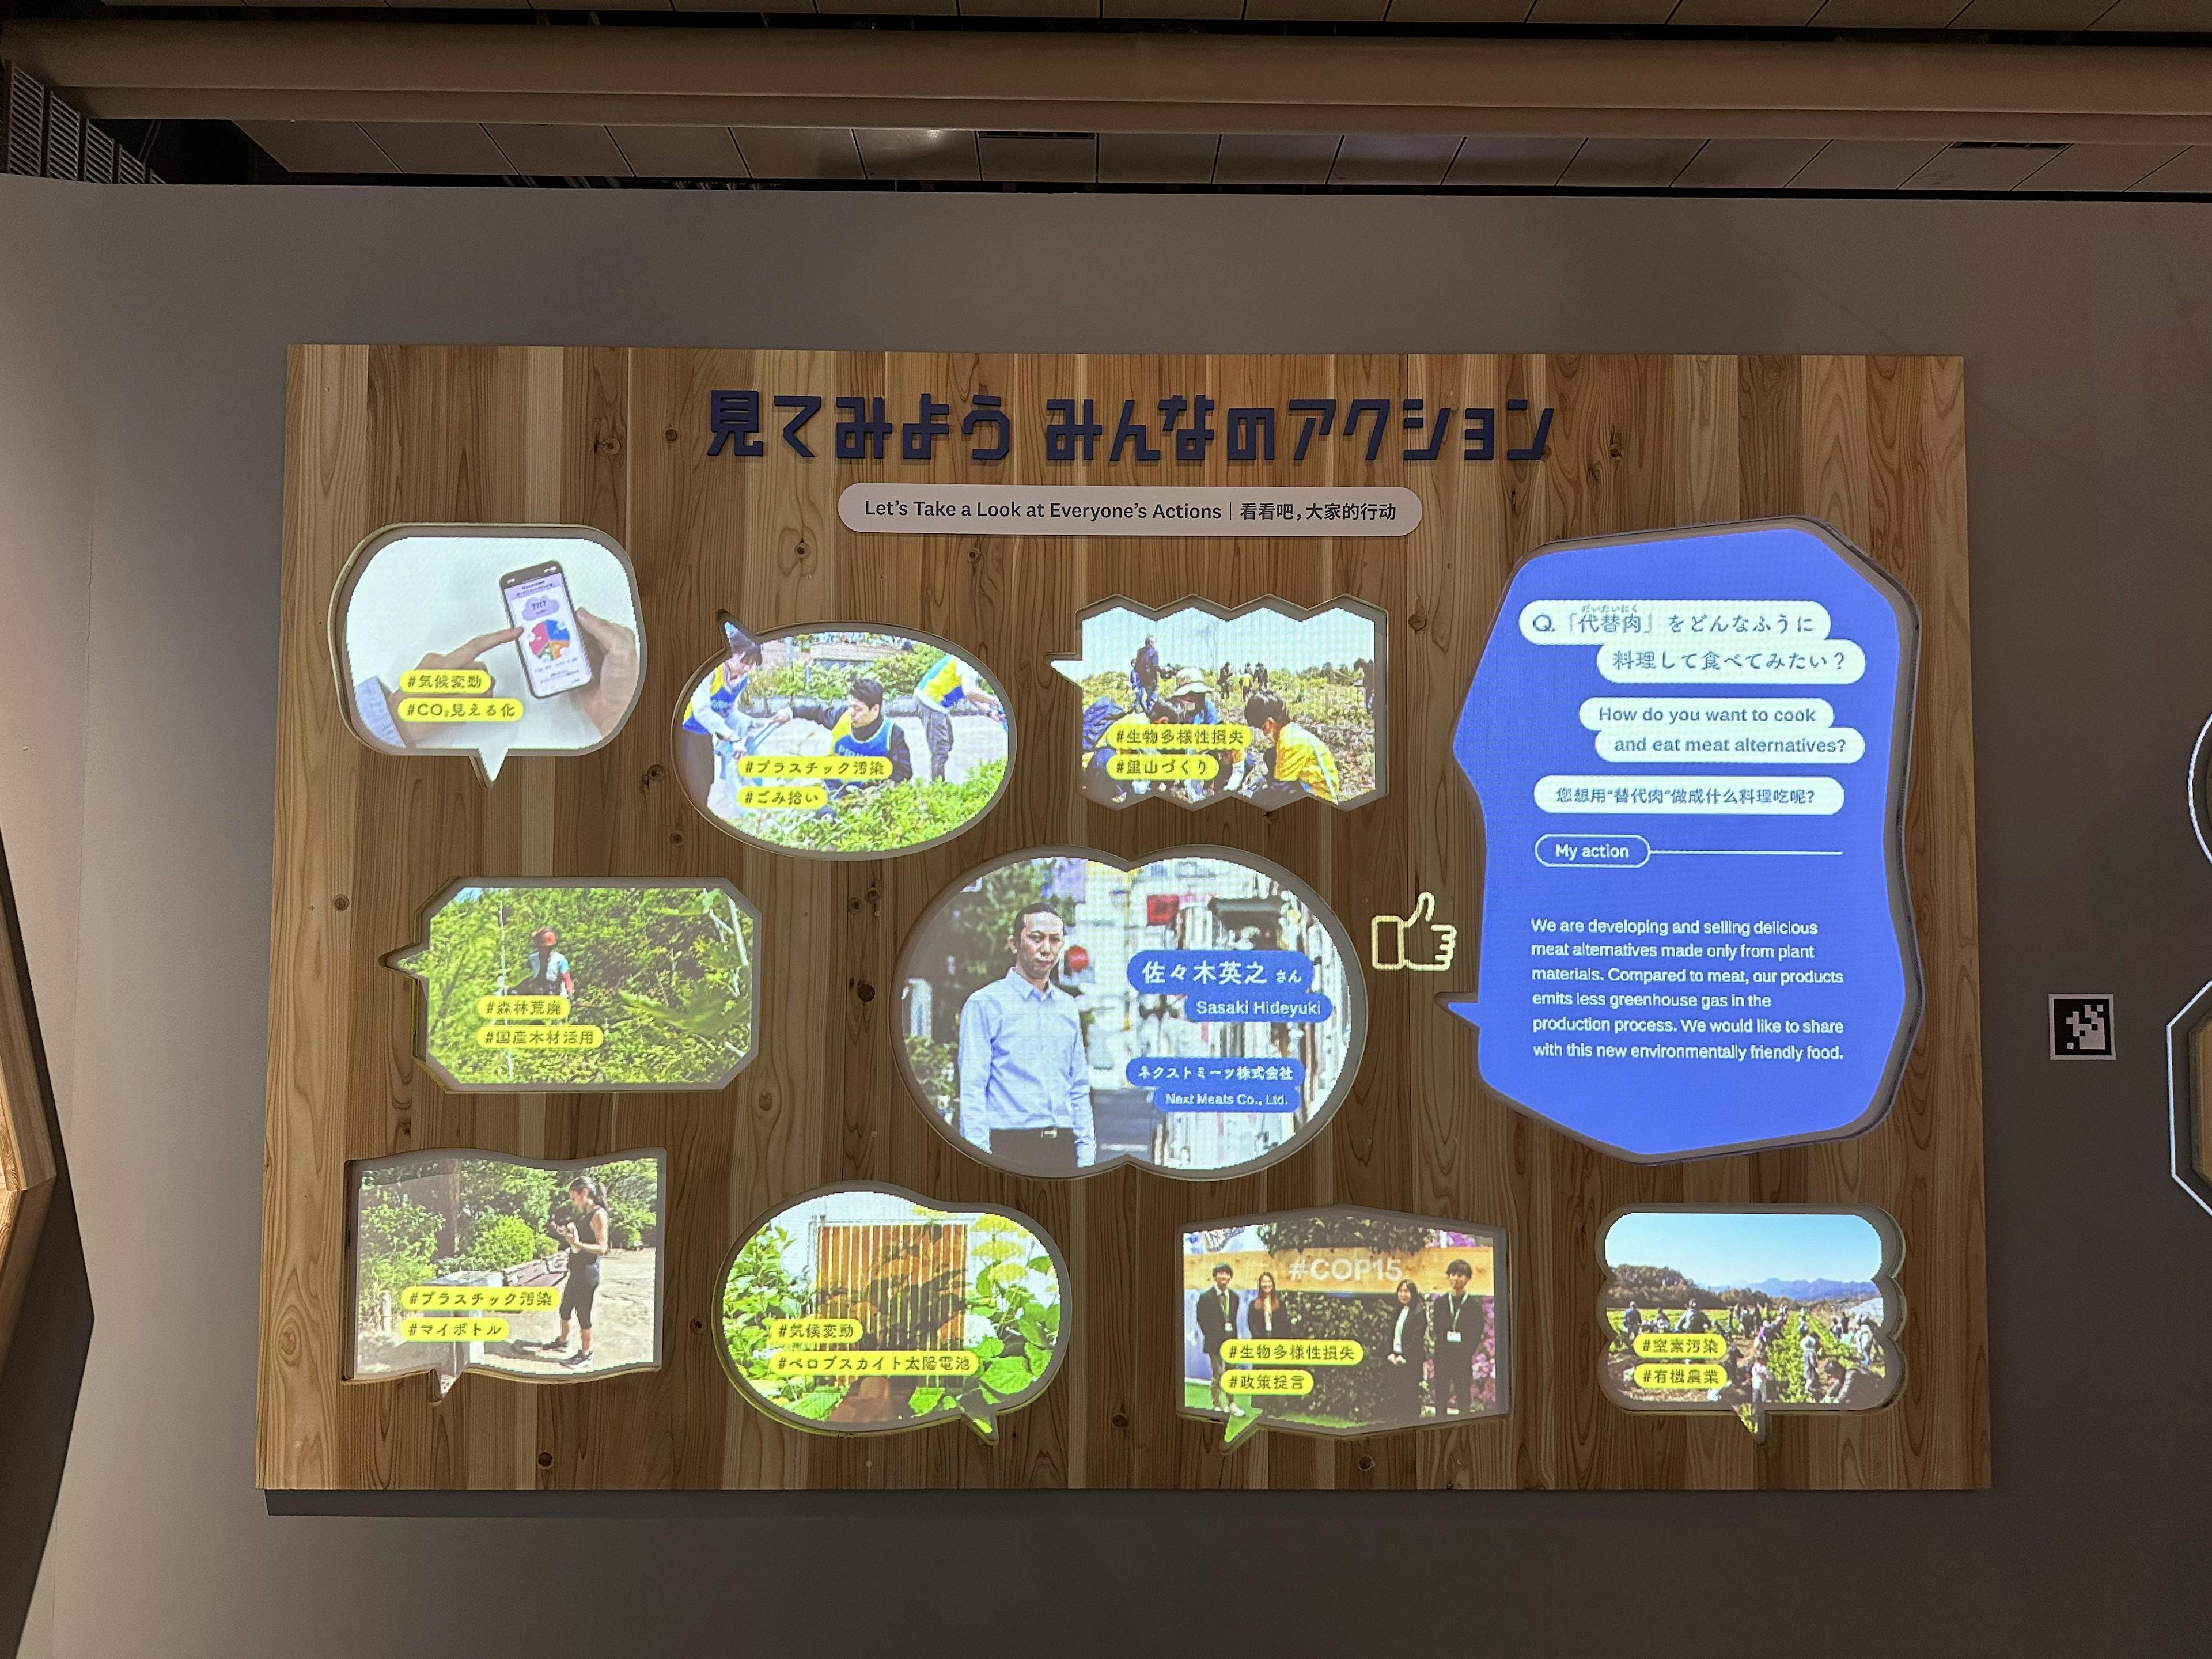 【11月22日大規模リニューアル】日本科学未来館の常設展示にて、ネクストミーツの活動が展示されています。